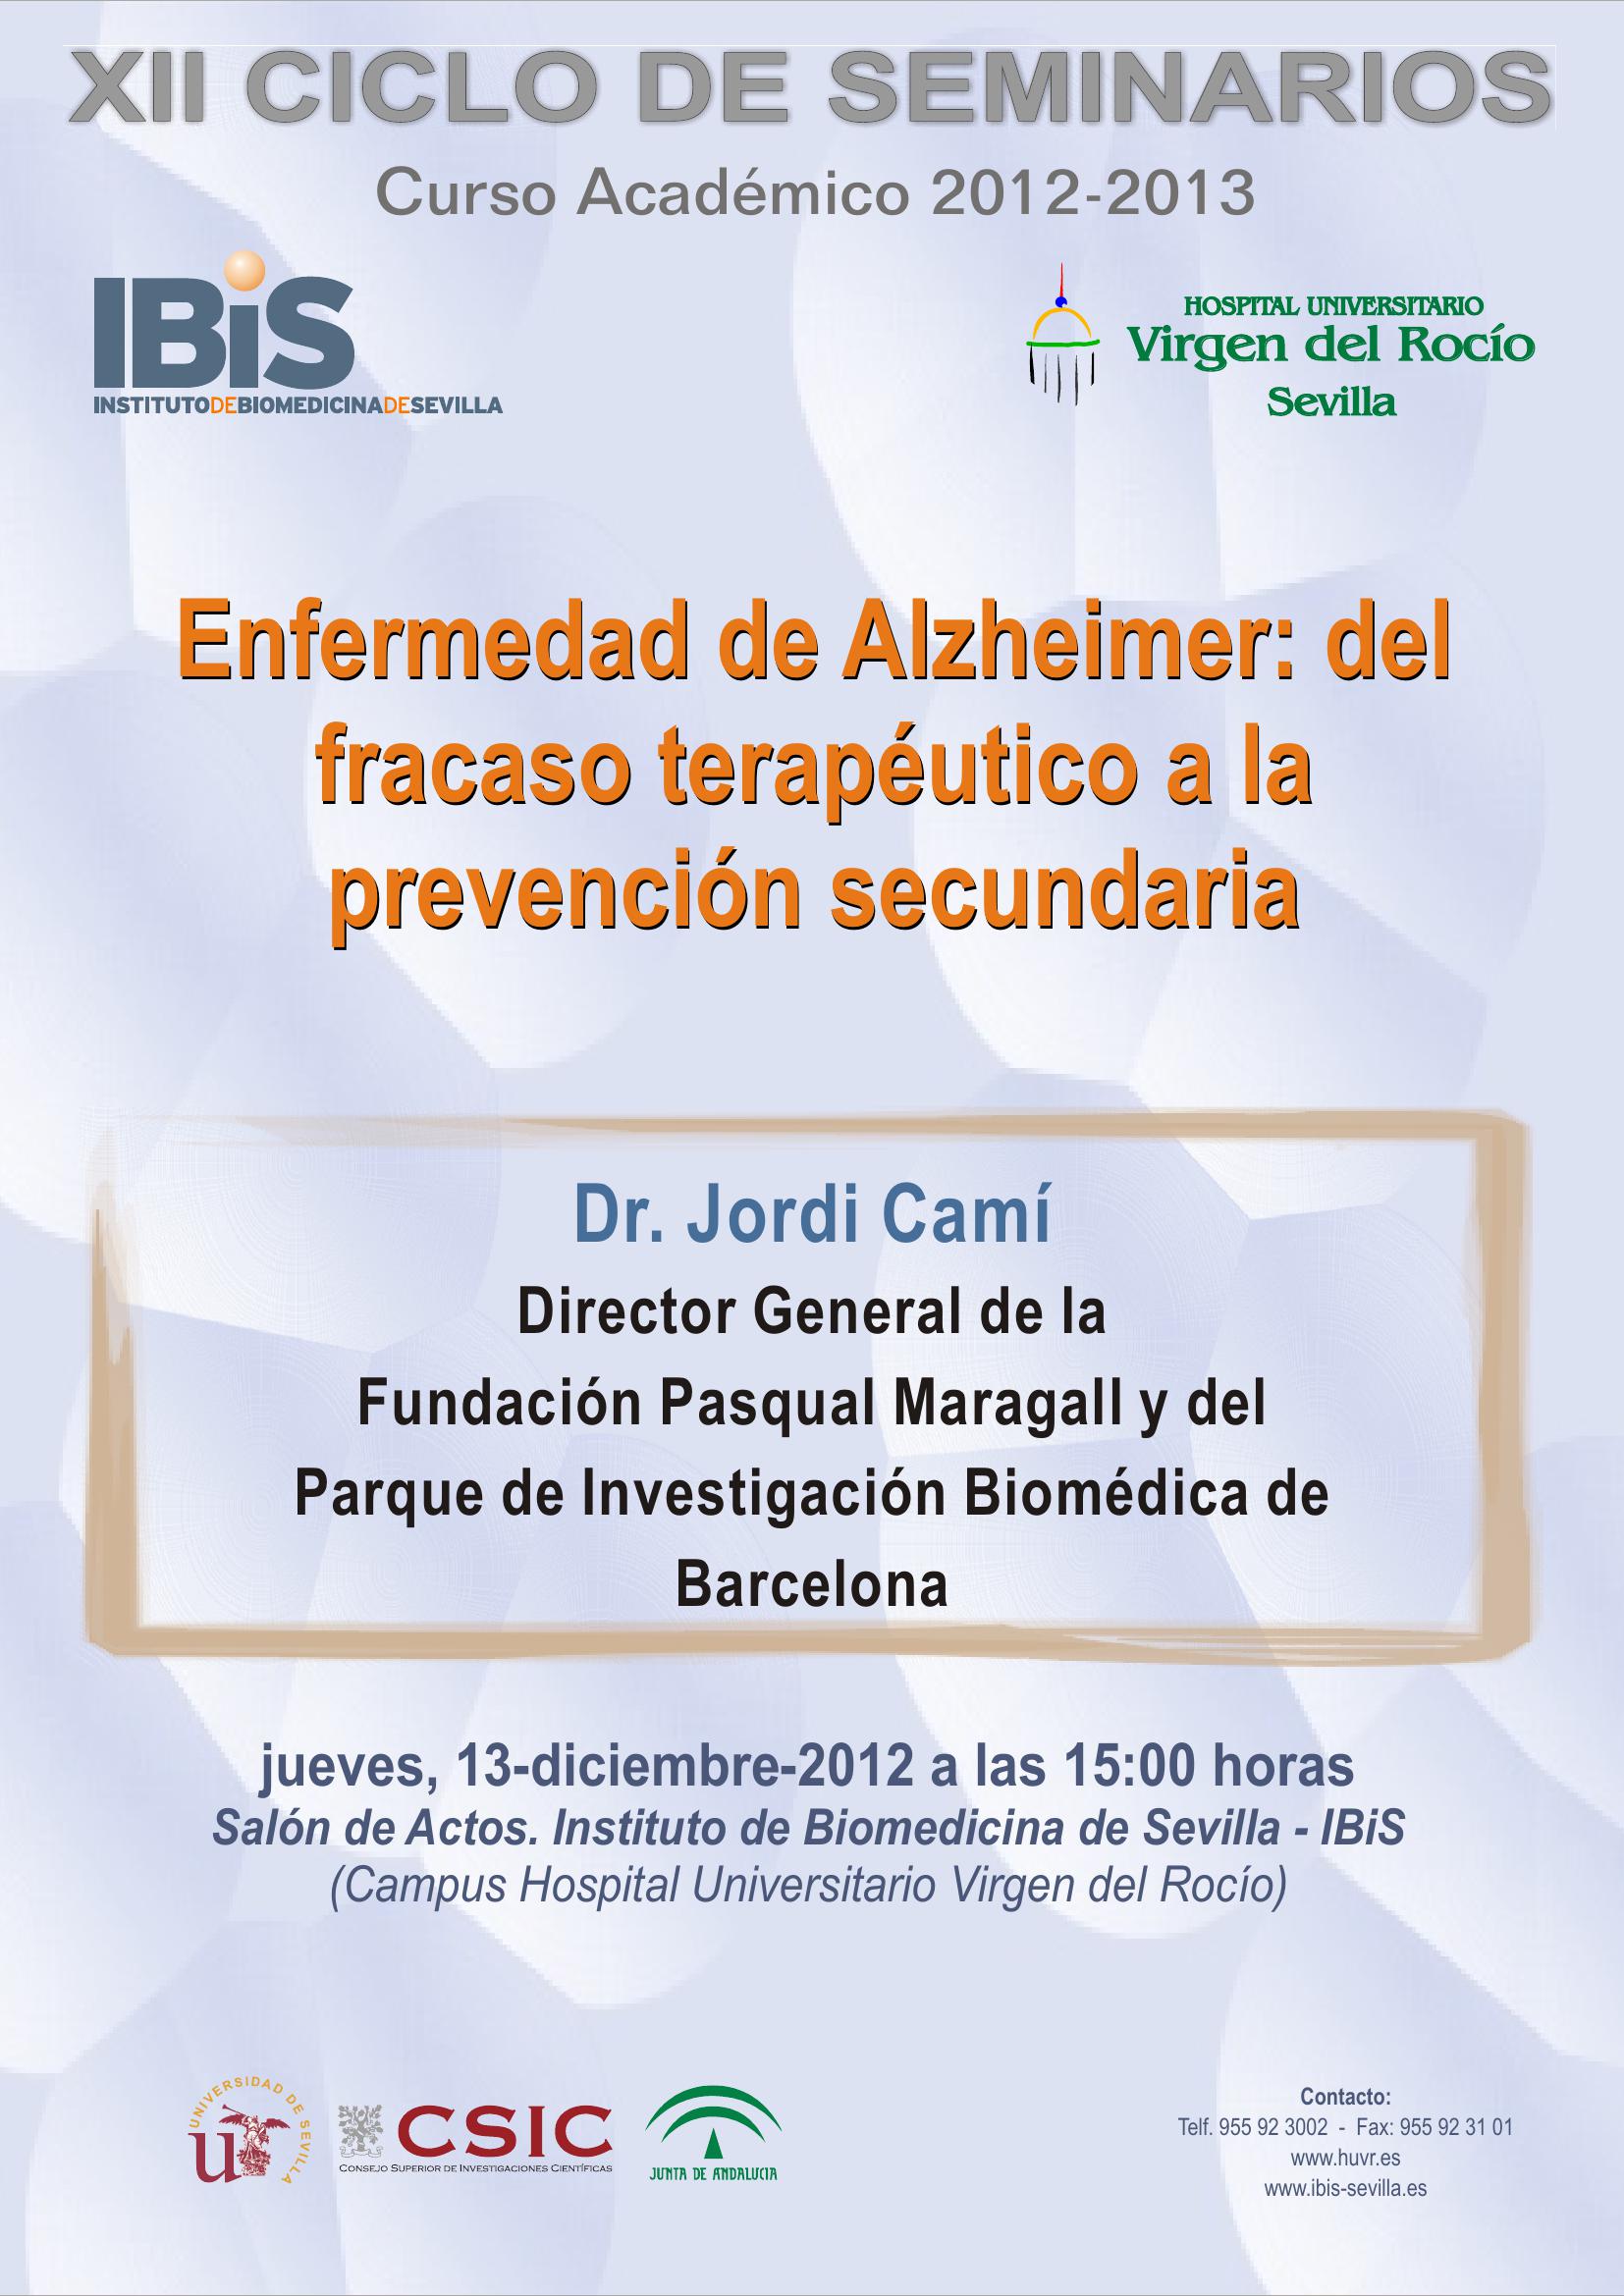 Poster: Enfermedad de Alzheimer: del fracaso terapéutico a la prevención secundaria.